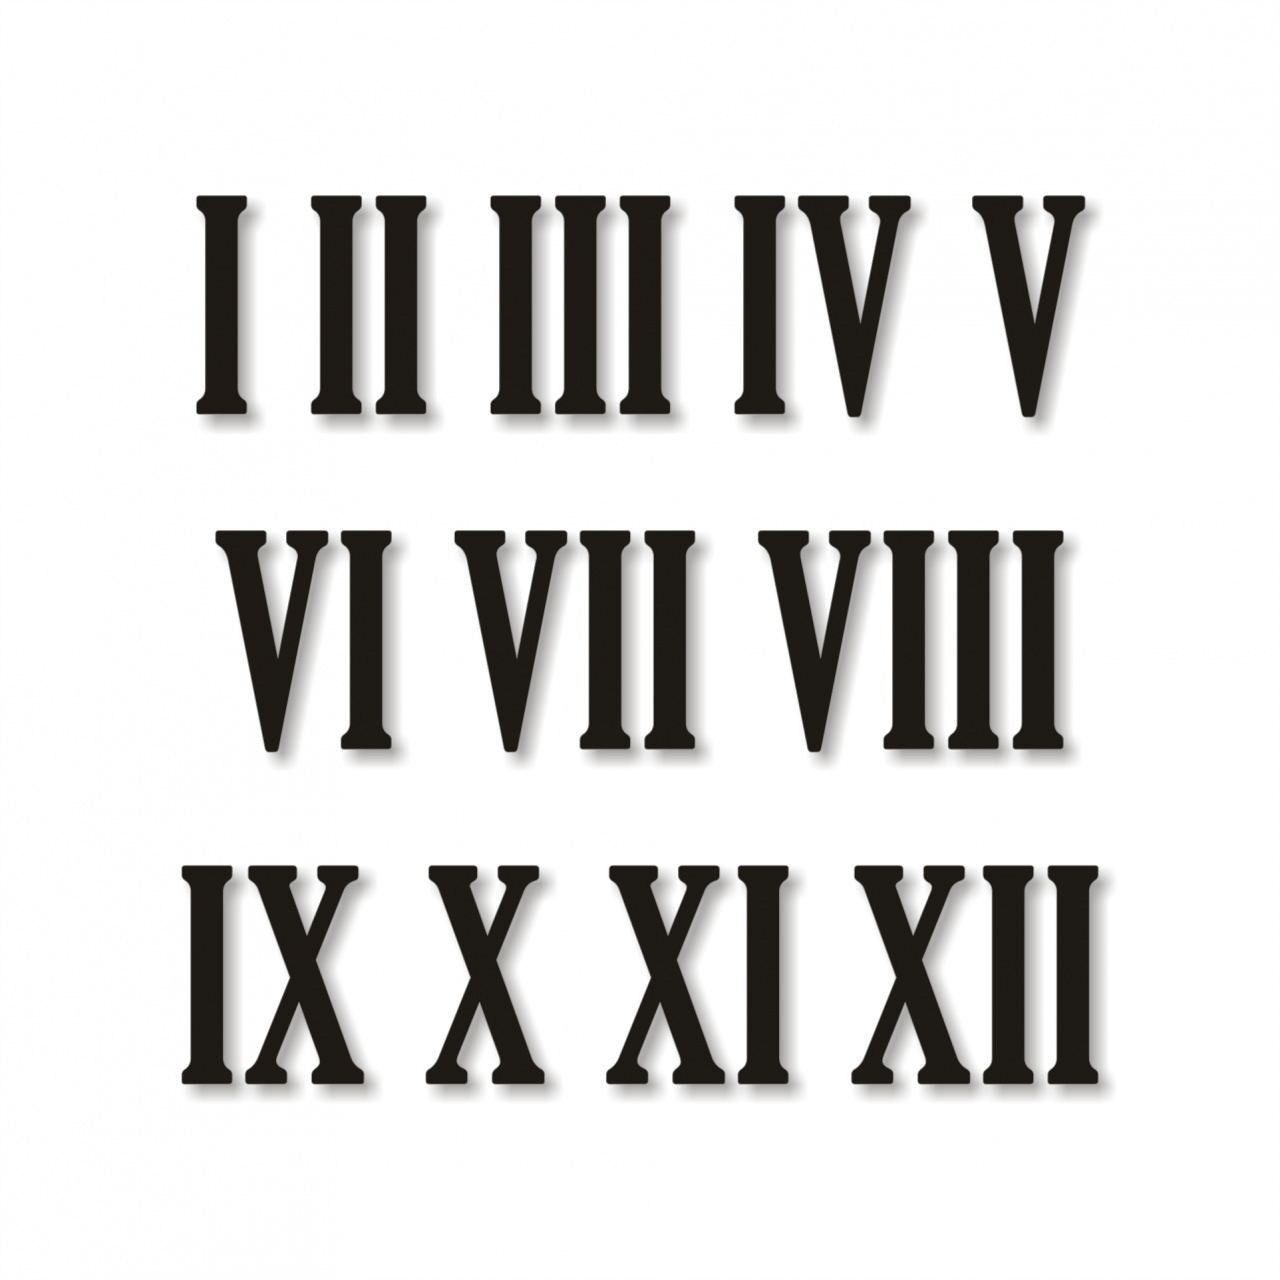 Cifre romane pentru ceas 1-12, 5 cm, HDF alb :: 5 cm